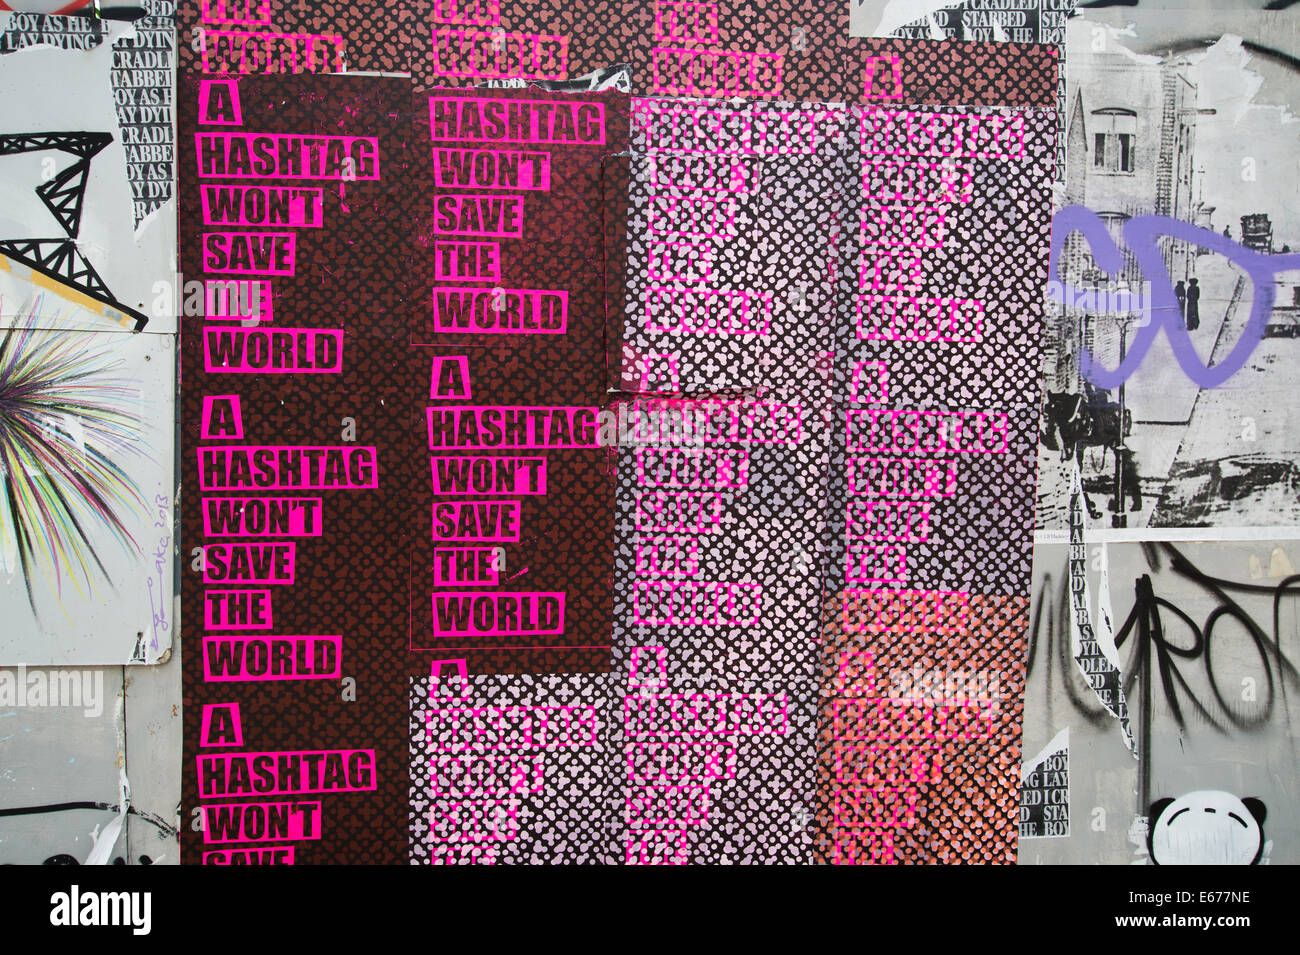 Londra. Hackney Wick.street art poster con la progettazione grafica di parole dicendo "un hashtag non salvare il mondo". Foto Stock